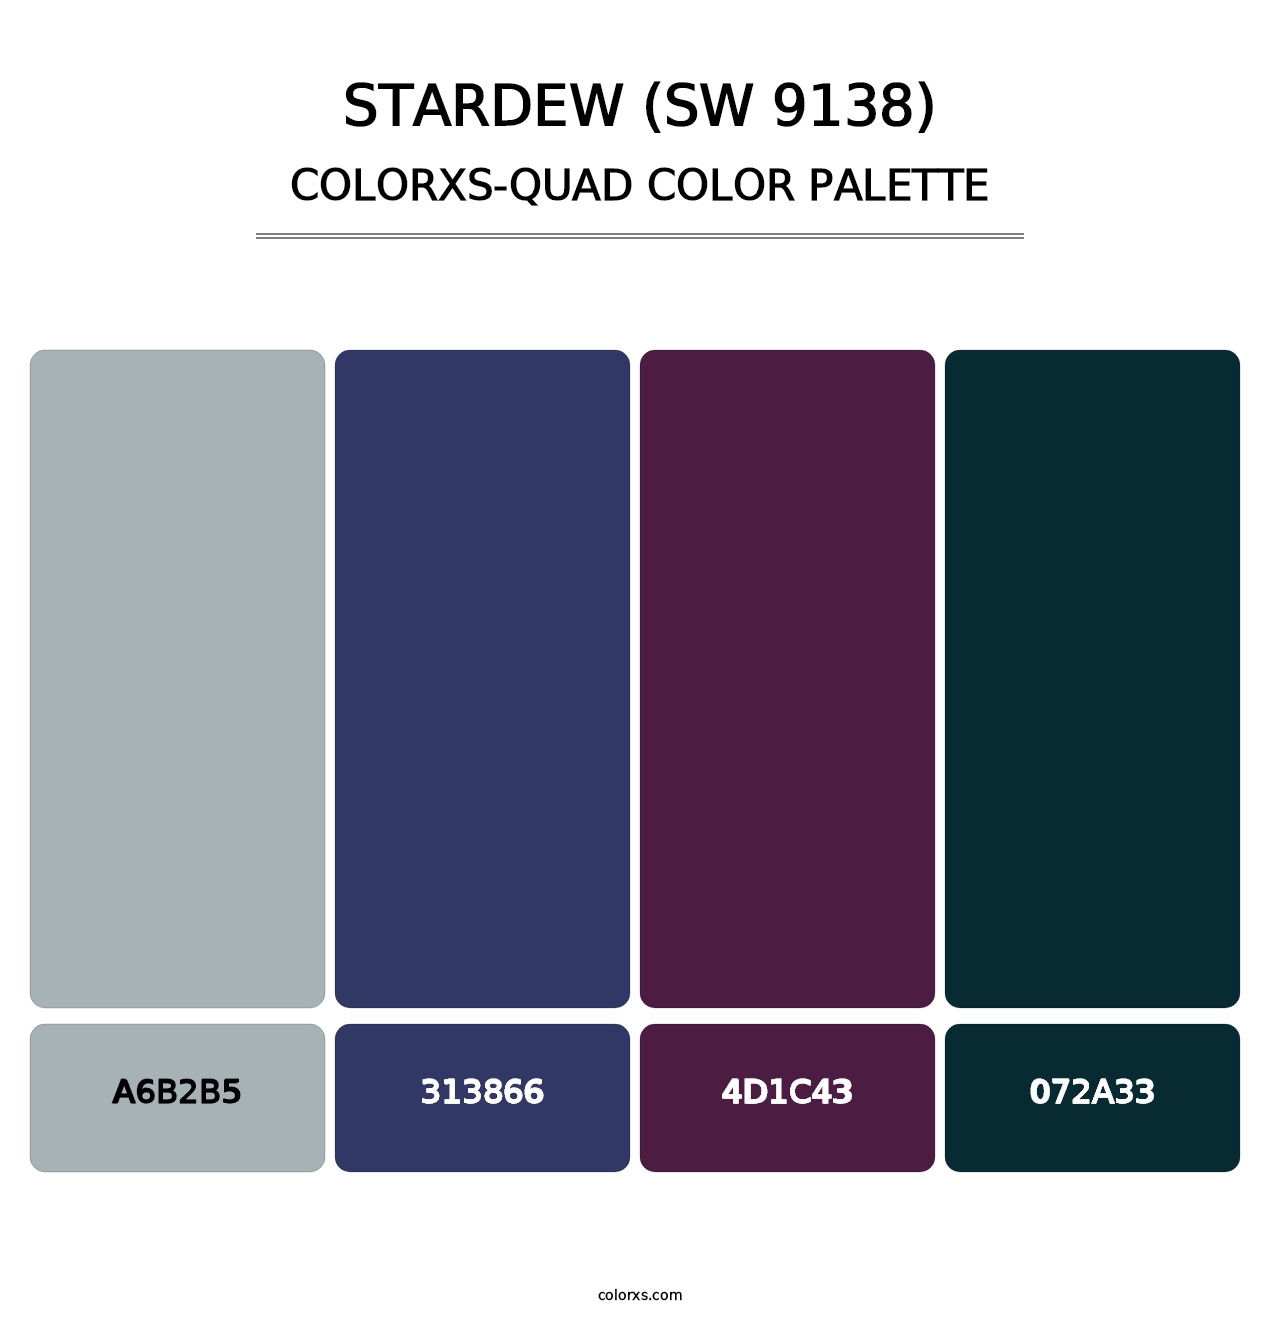 Stardew (SW 9138) - Colorxs Quad Palette